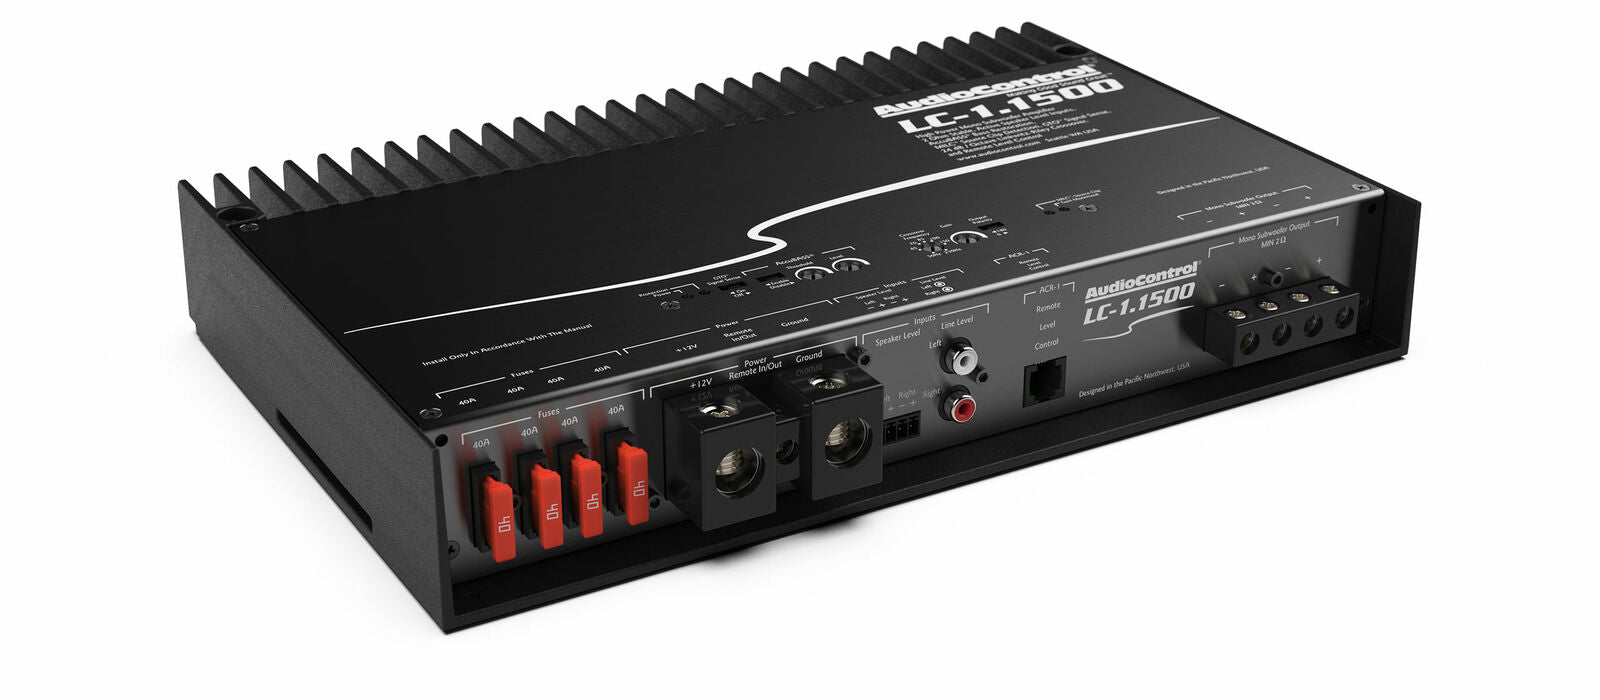 AudioControl Monoblock 1500 Watt Class D Subwoofer Amplifier w/ Accubass